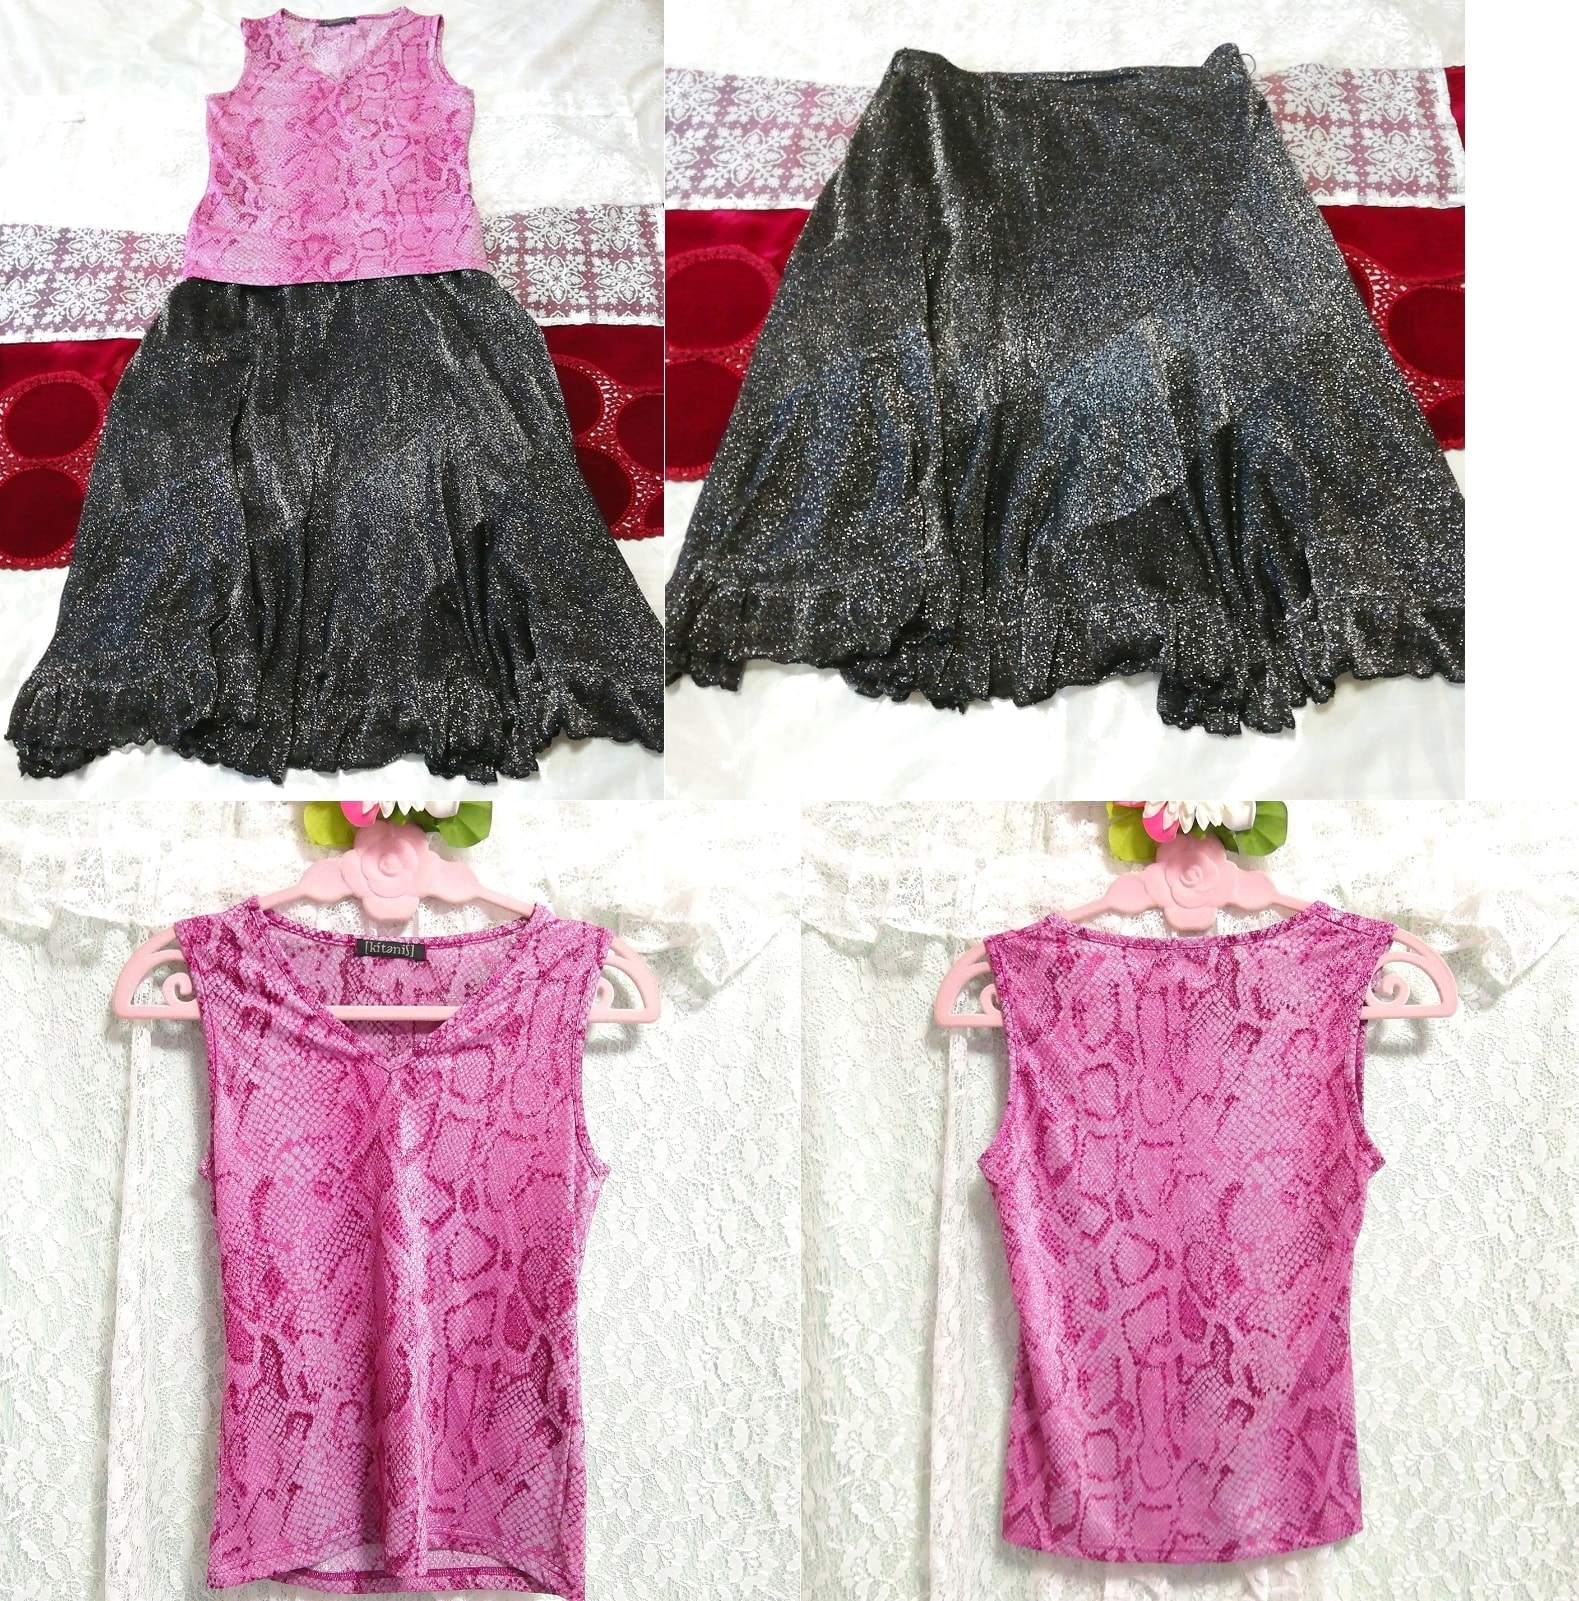 紫色粉色束腰外衣睡衣灰色闪光喇叭形美人鱼裙 2 件, 时尚, 女士时装, 睡衣